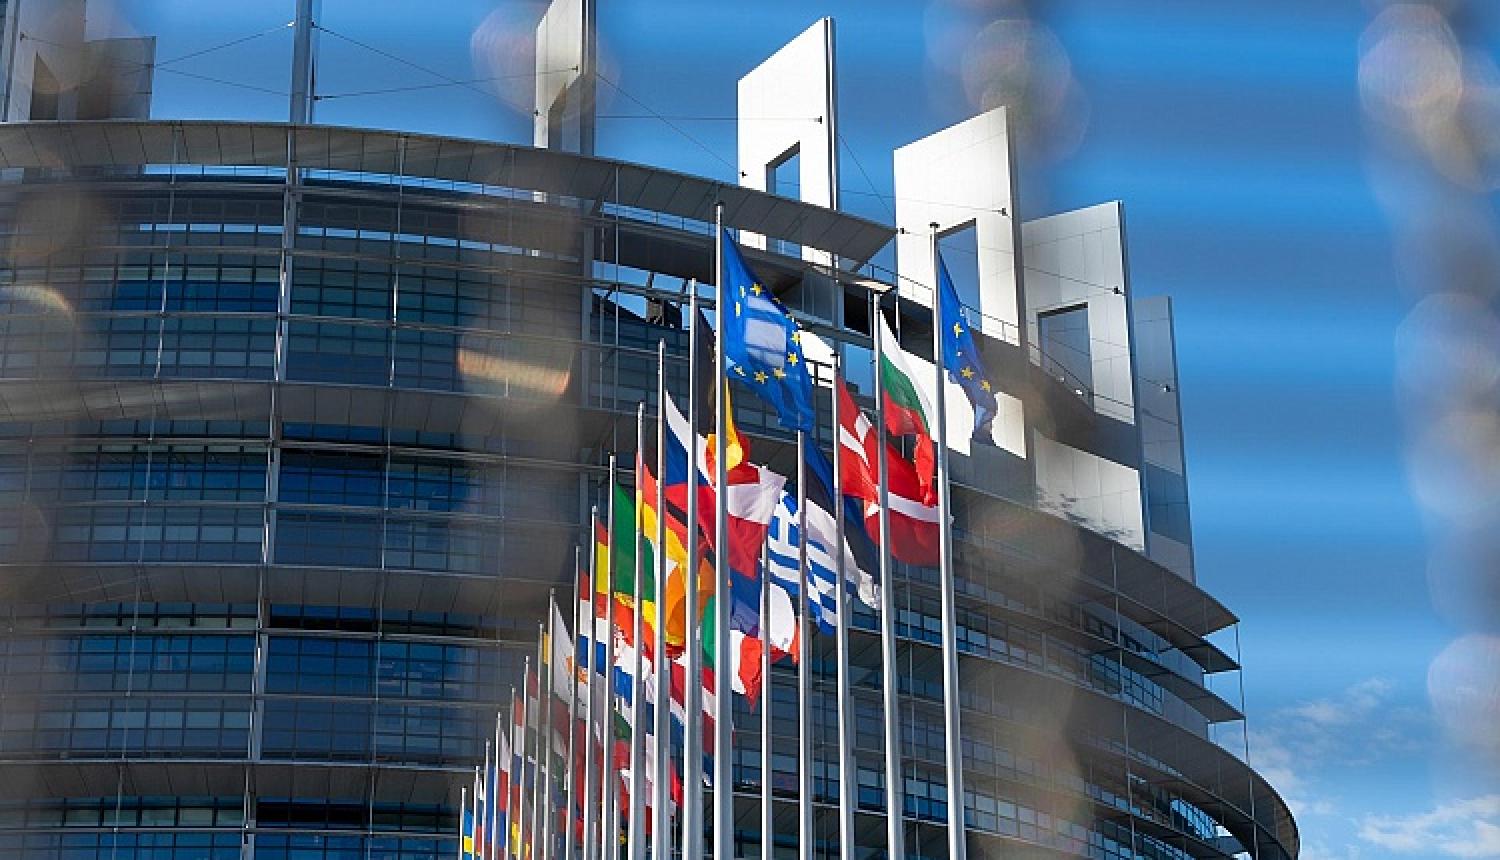 ES dalībvalstu karogi pie Eiropas Parlamenta ēkas Briselē